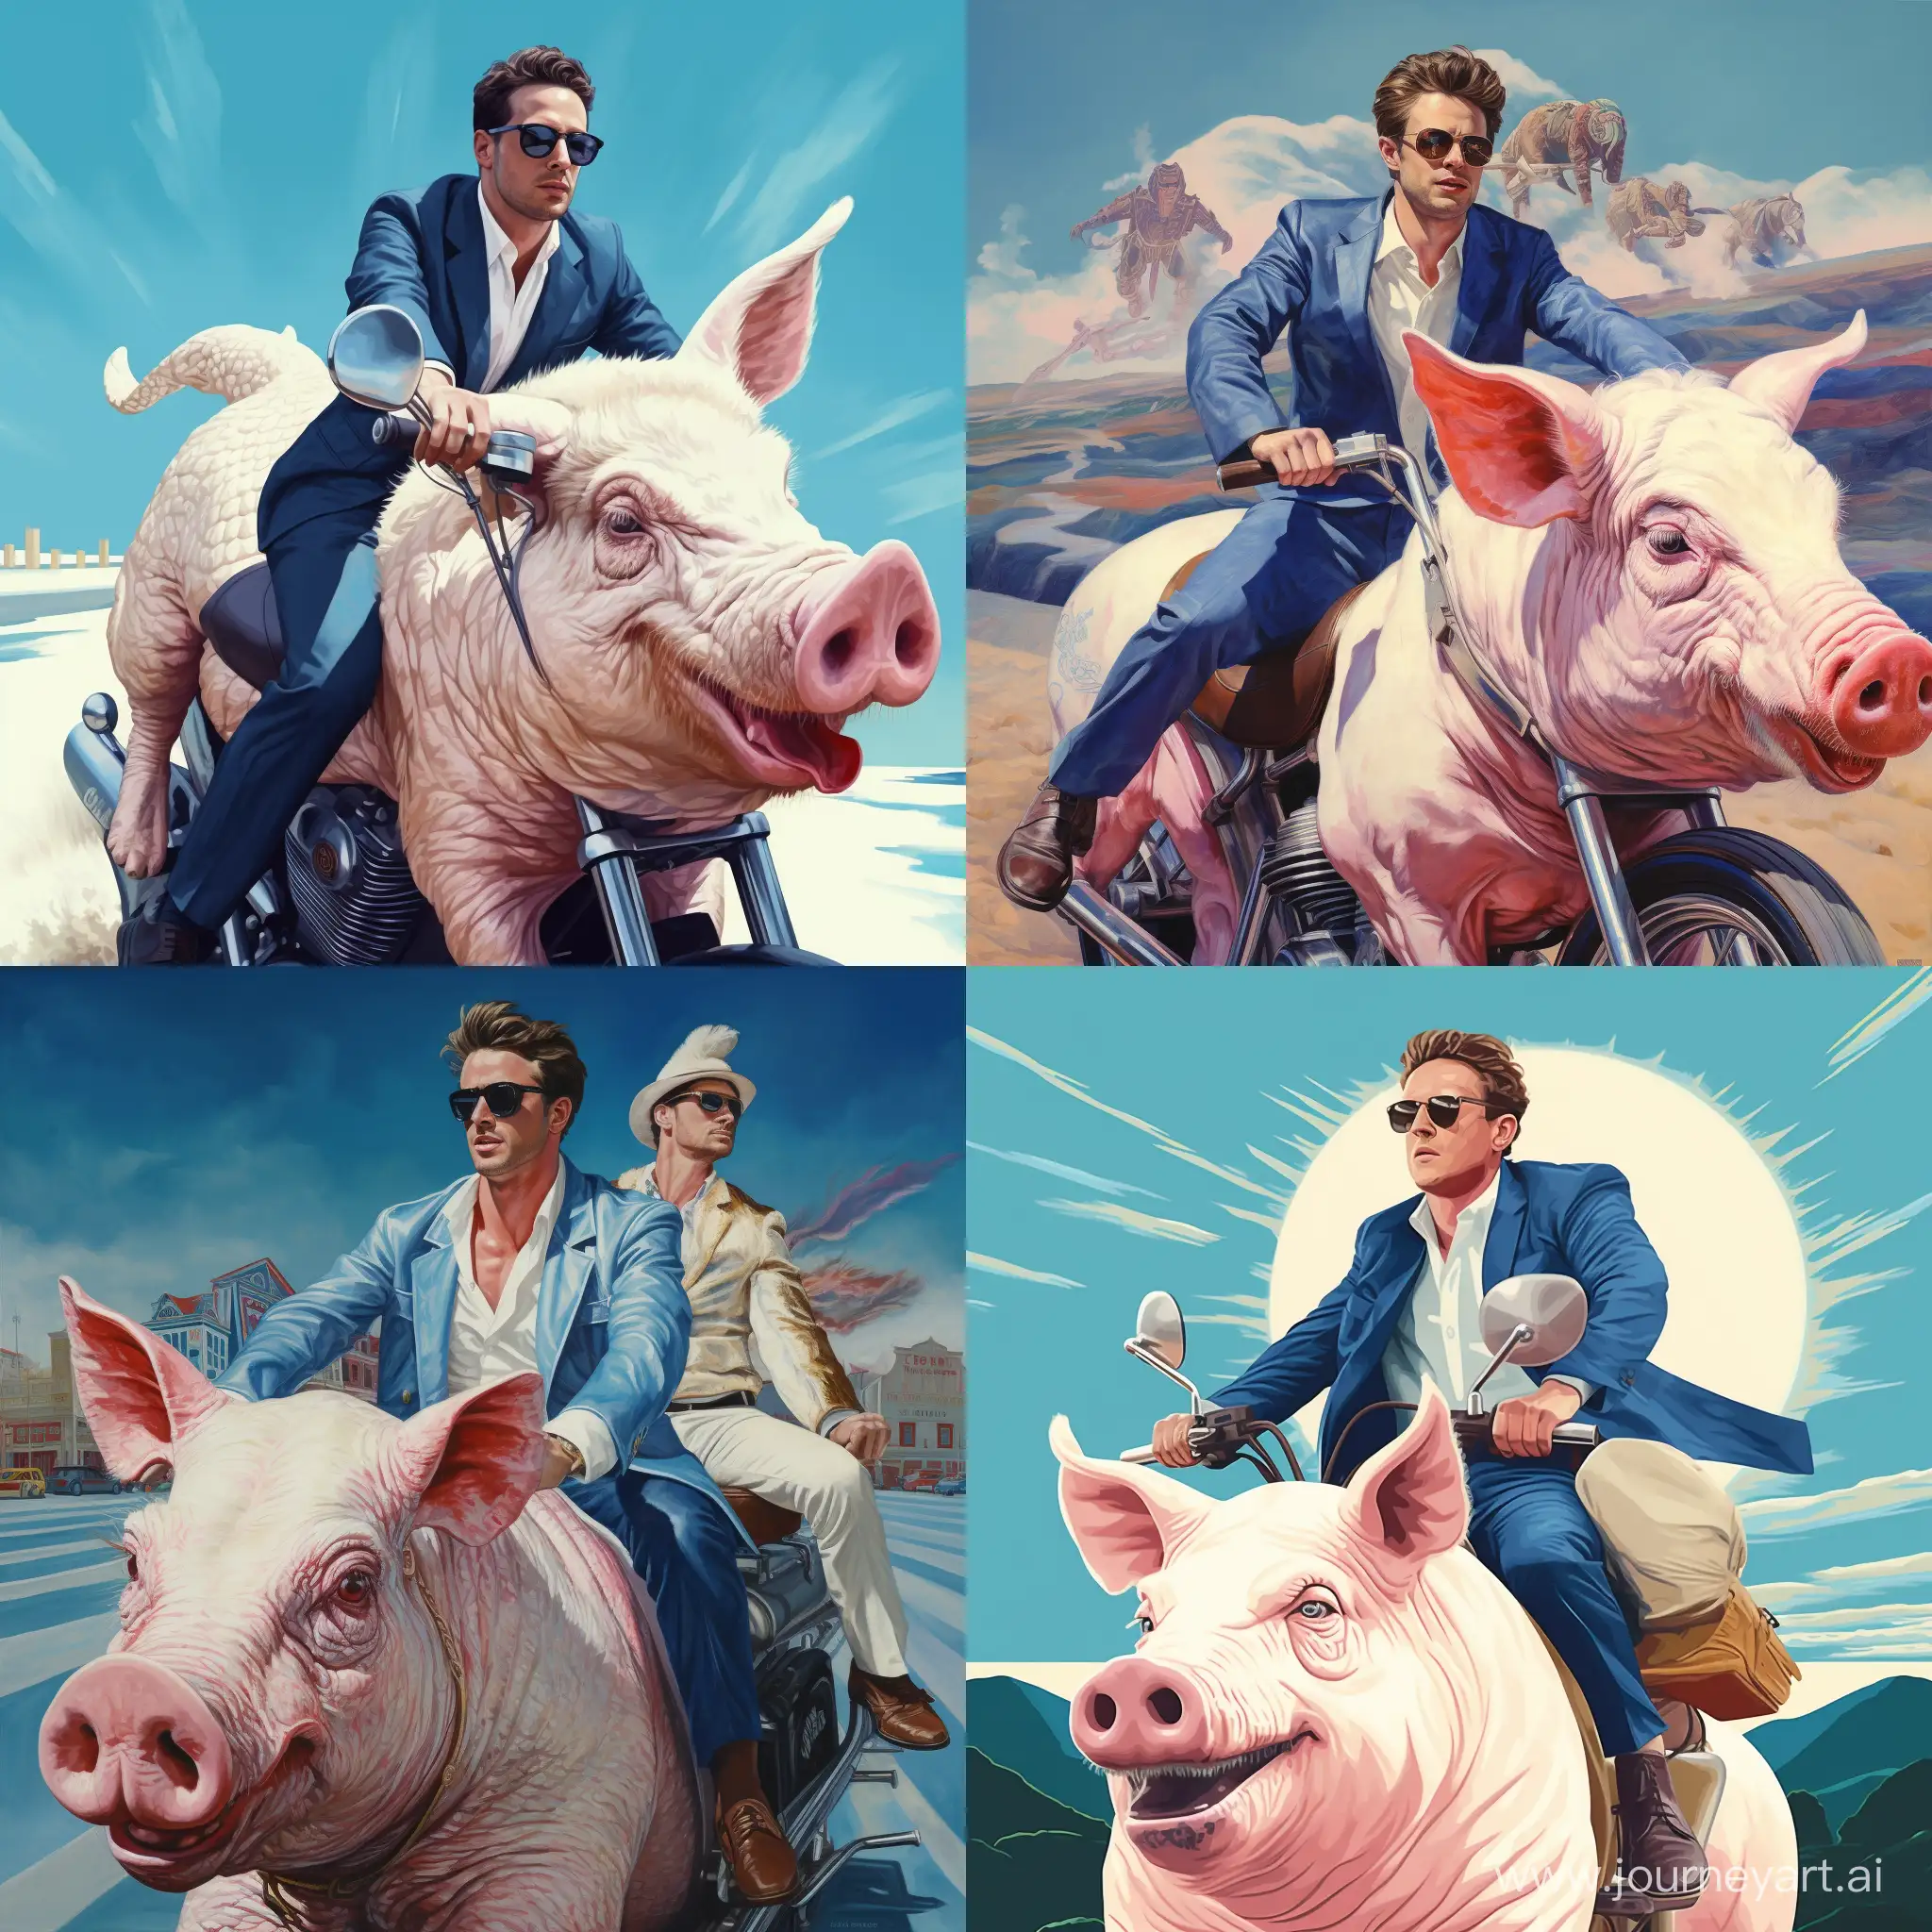 Мужчина 30 лет едет верхом на синей свинье, мужчина в белой кожаной куртке цепляется за свинью двумя руками, свинья бежит